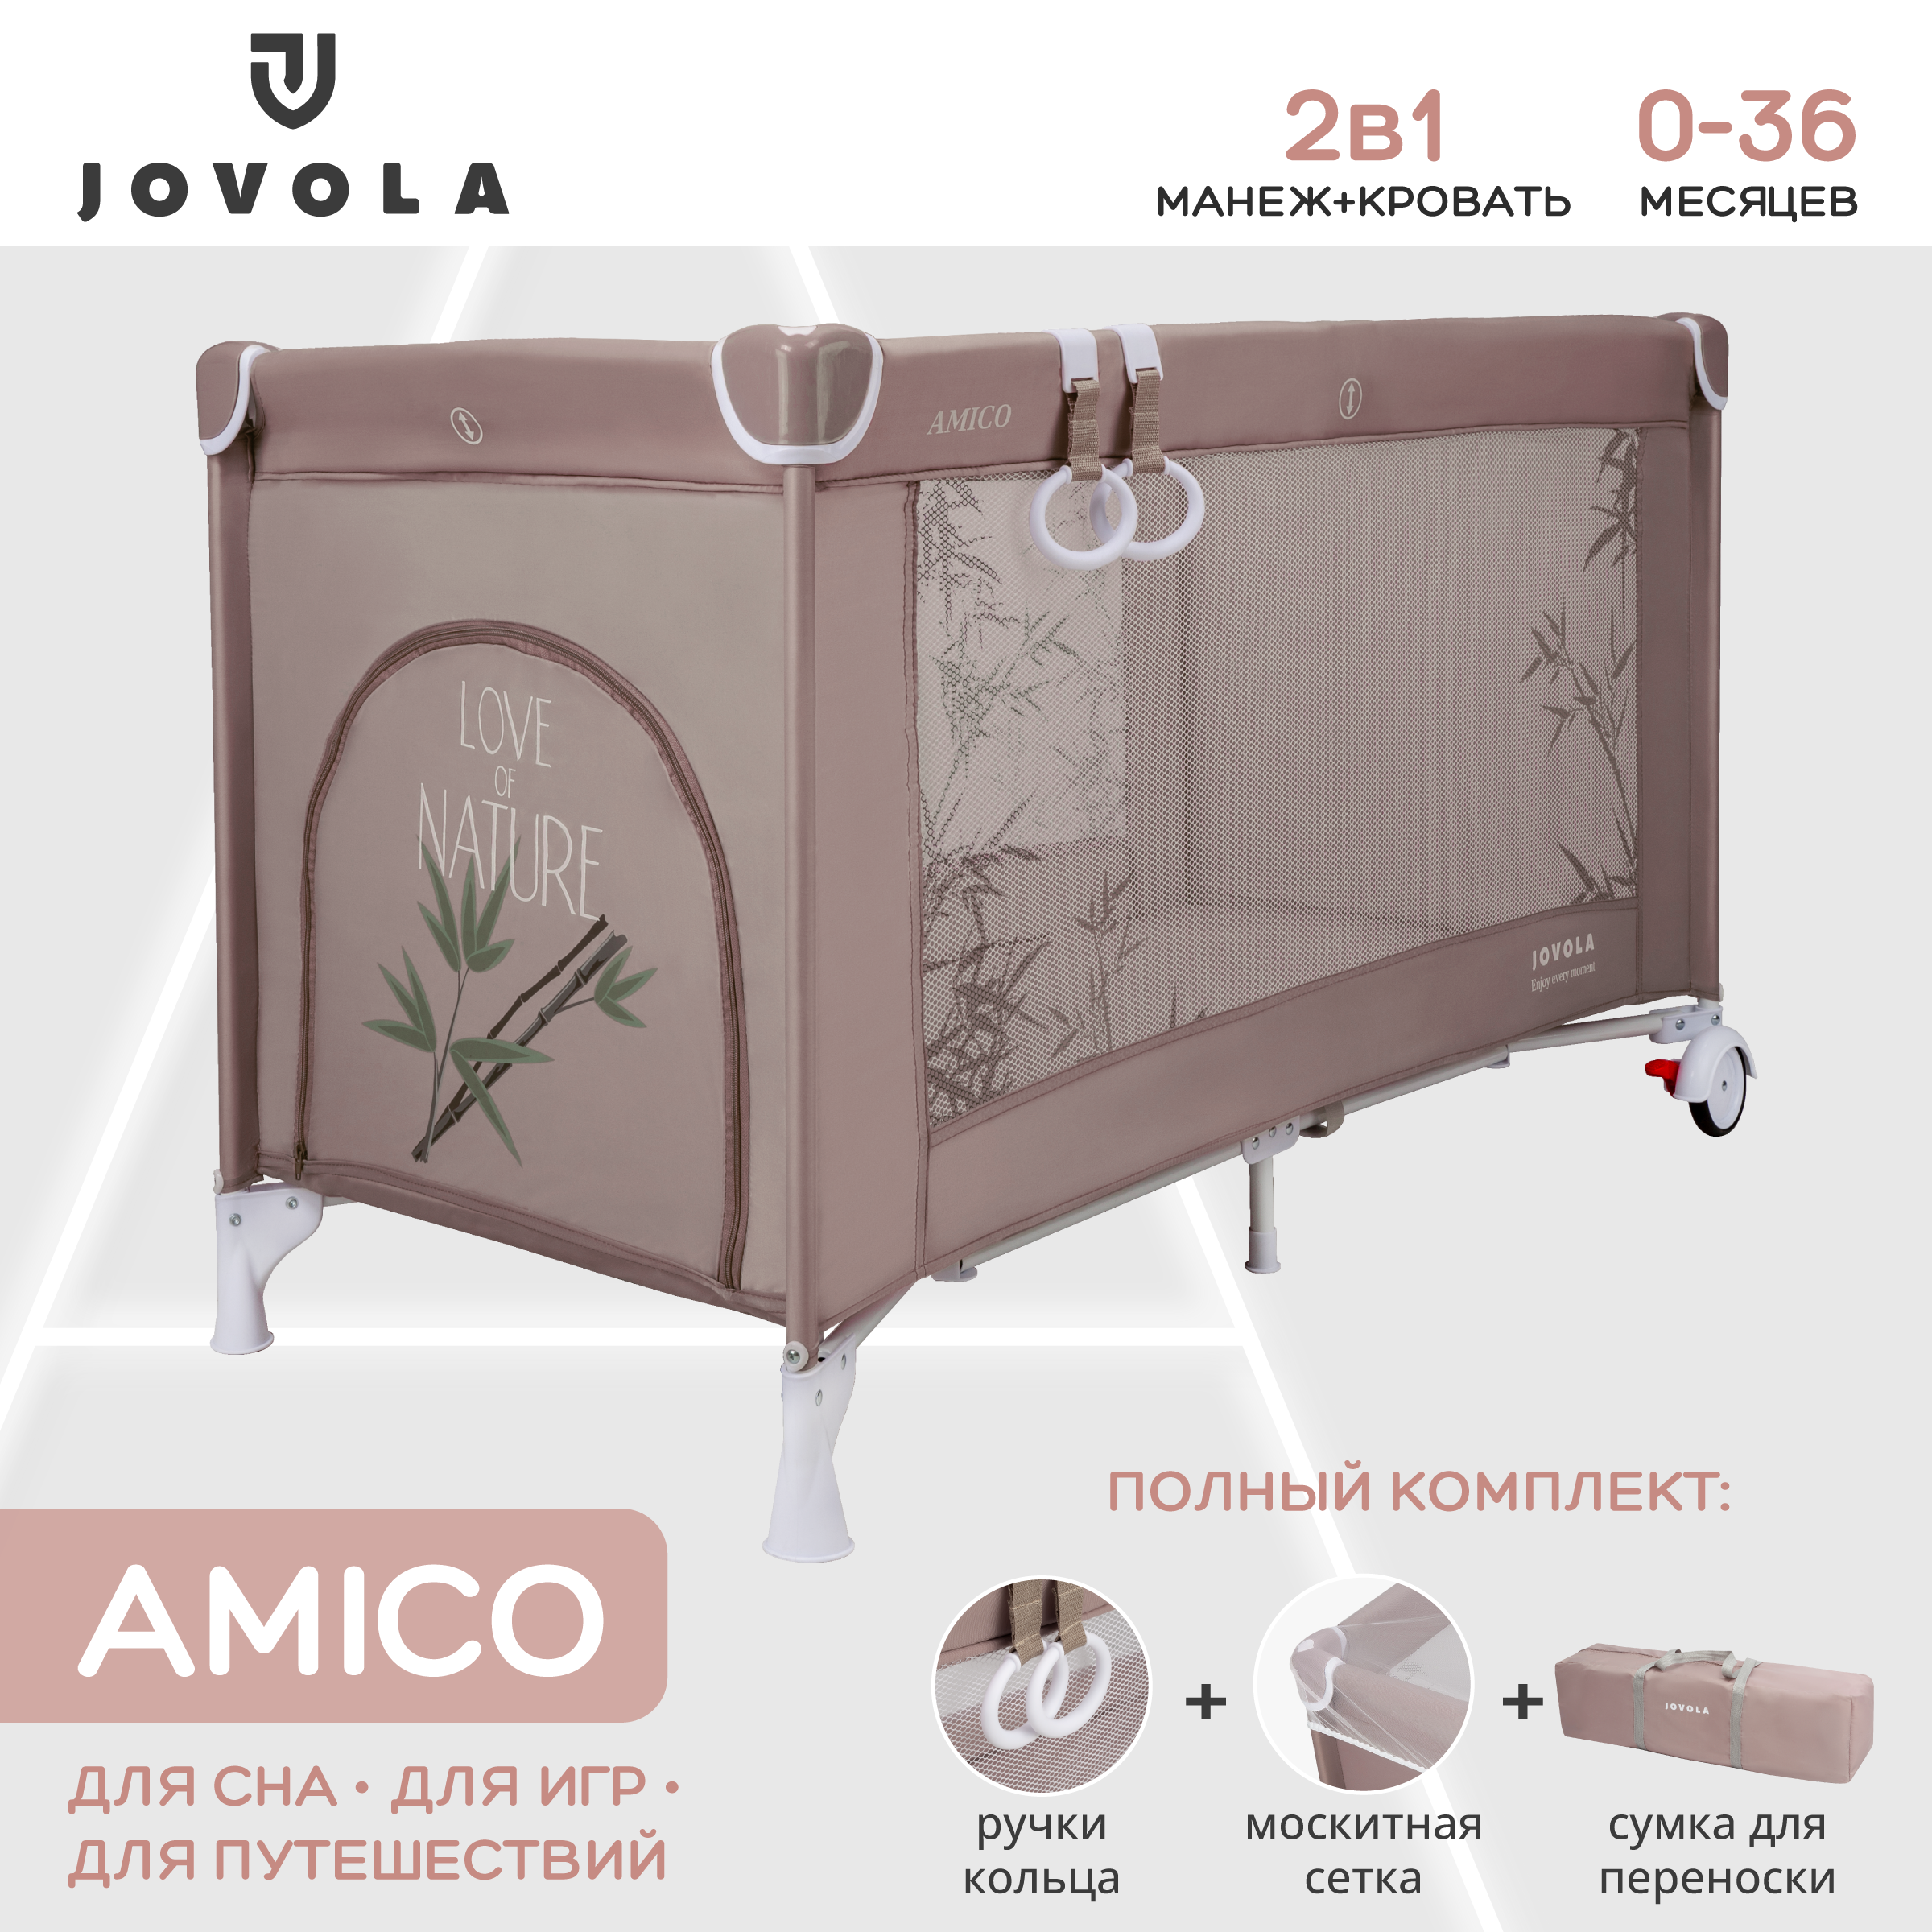 Манеж кровать детский Indigo JOVOLA AMICO складной 1 уровень мокко бамбук bambola москитная сетка на кровать манеж сундучок